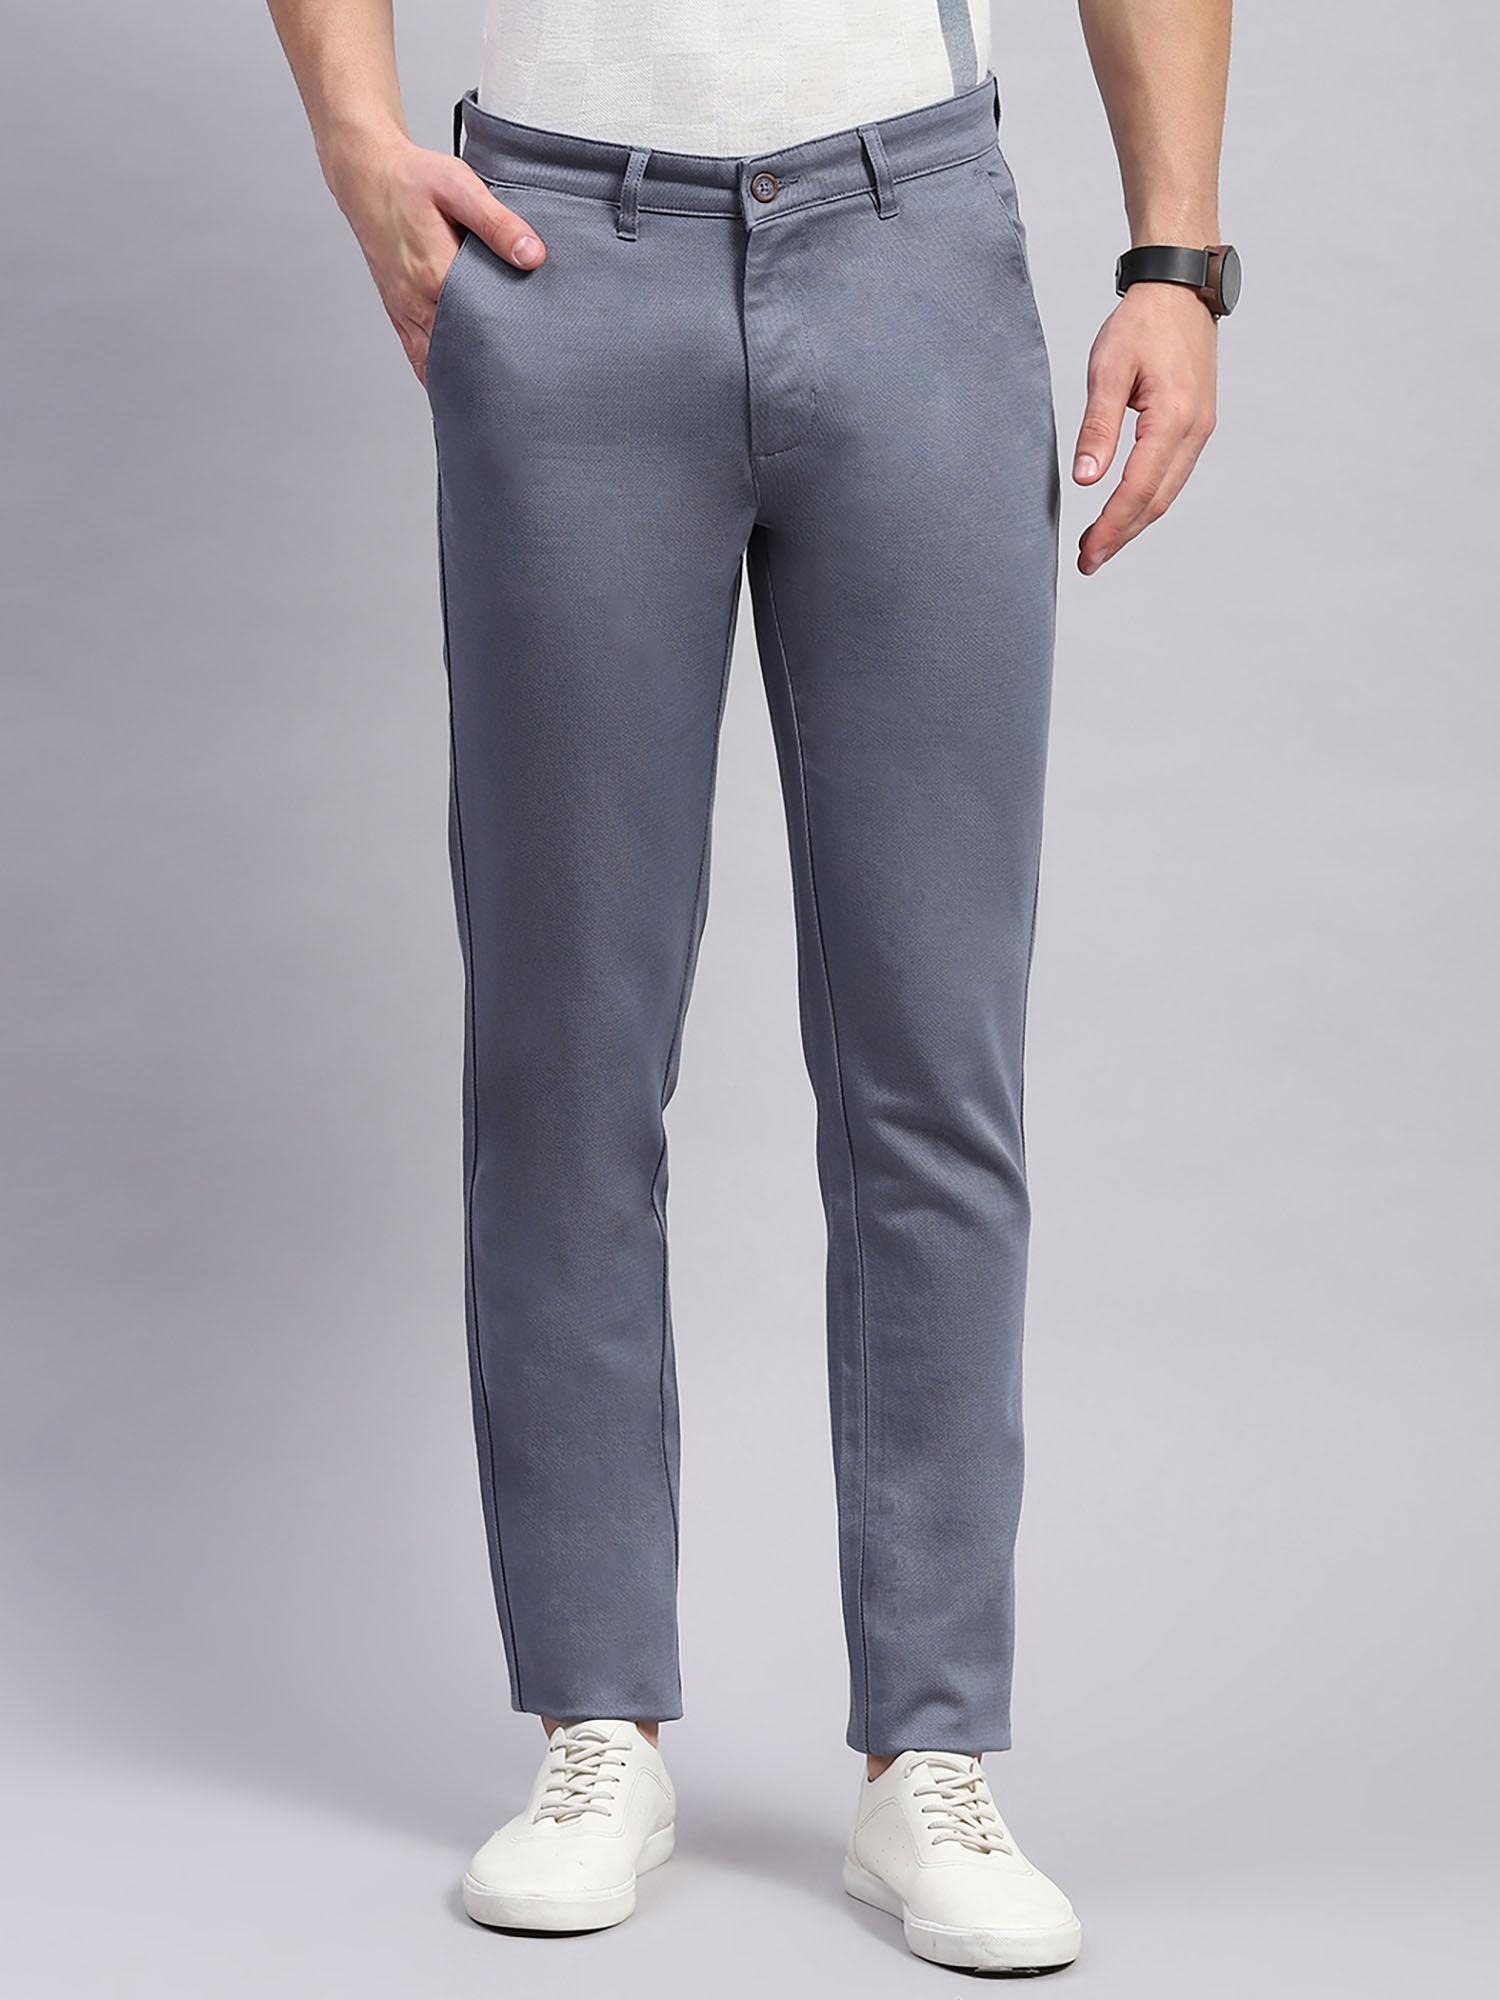 mens-grey-solid-regular-fit-trouser